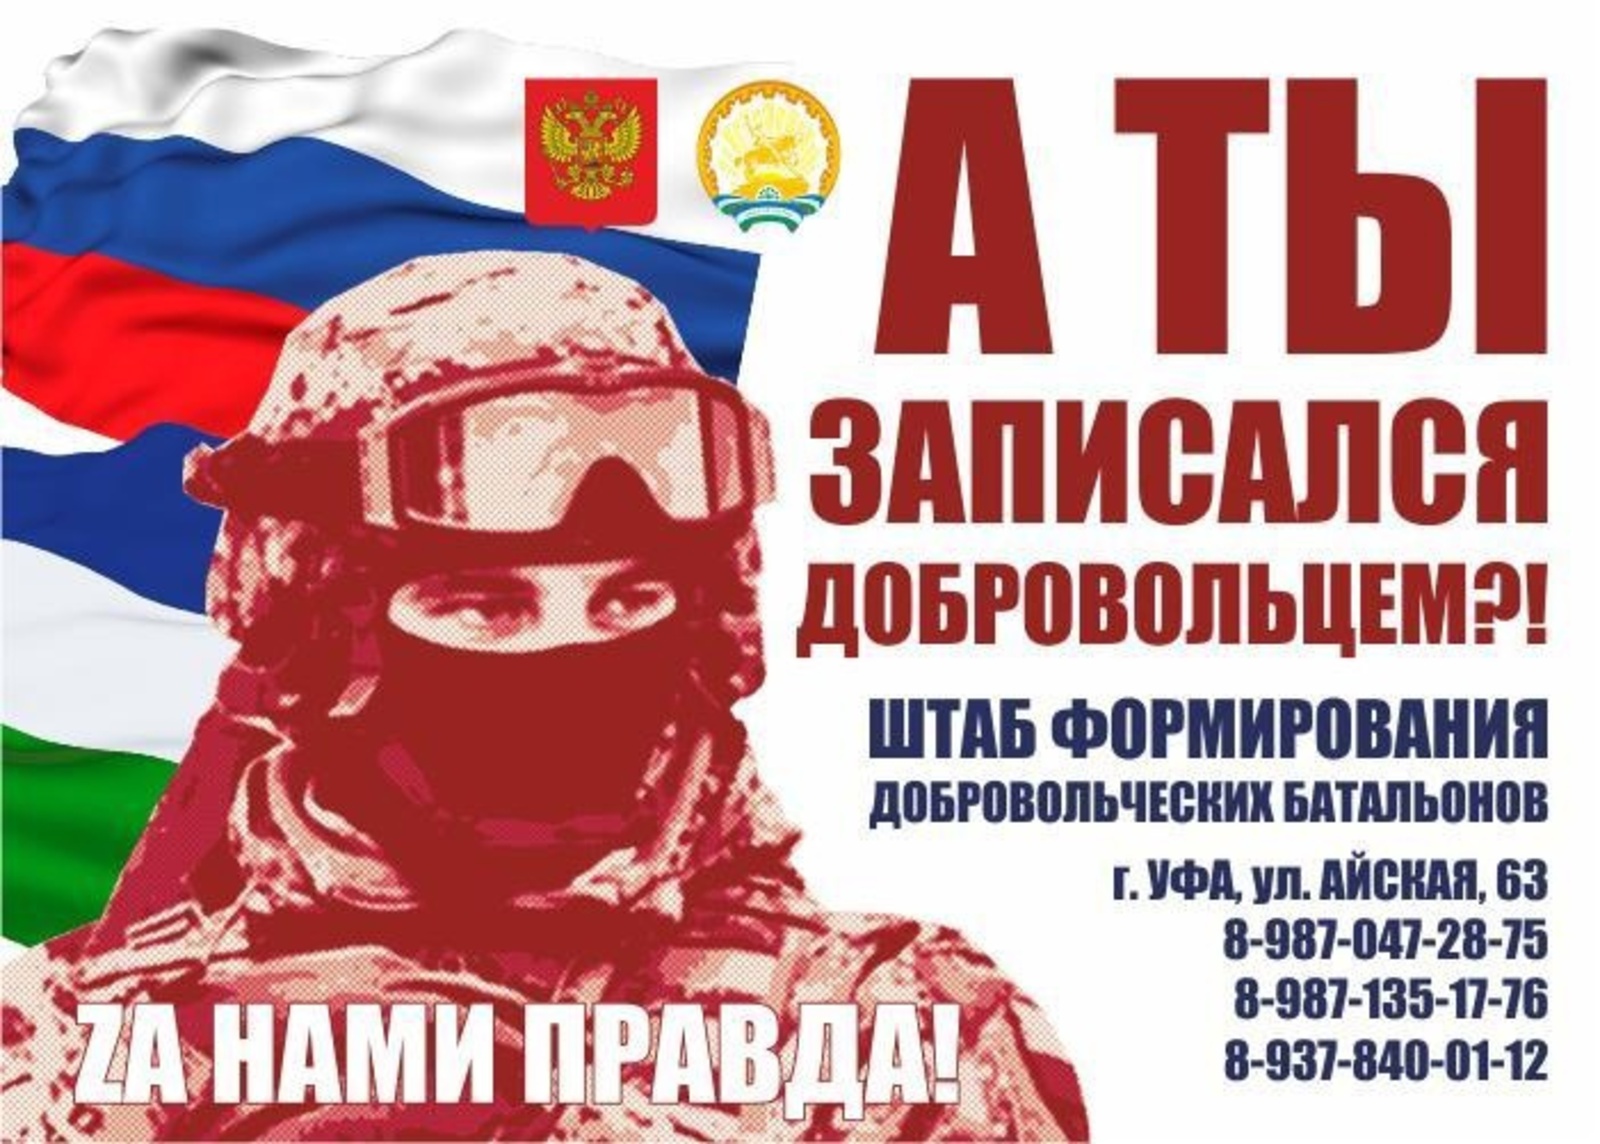 Оперативная информация от Штаба формирования добровольческих батальонов им. Даяна Мурзина и «Северные амуры»